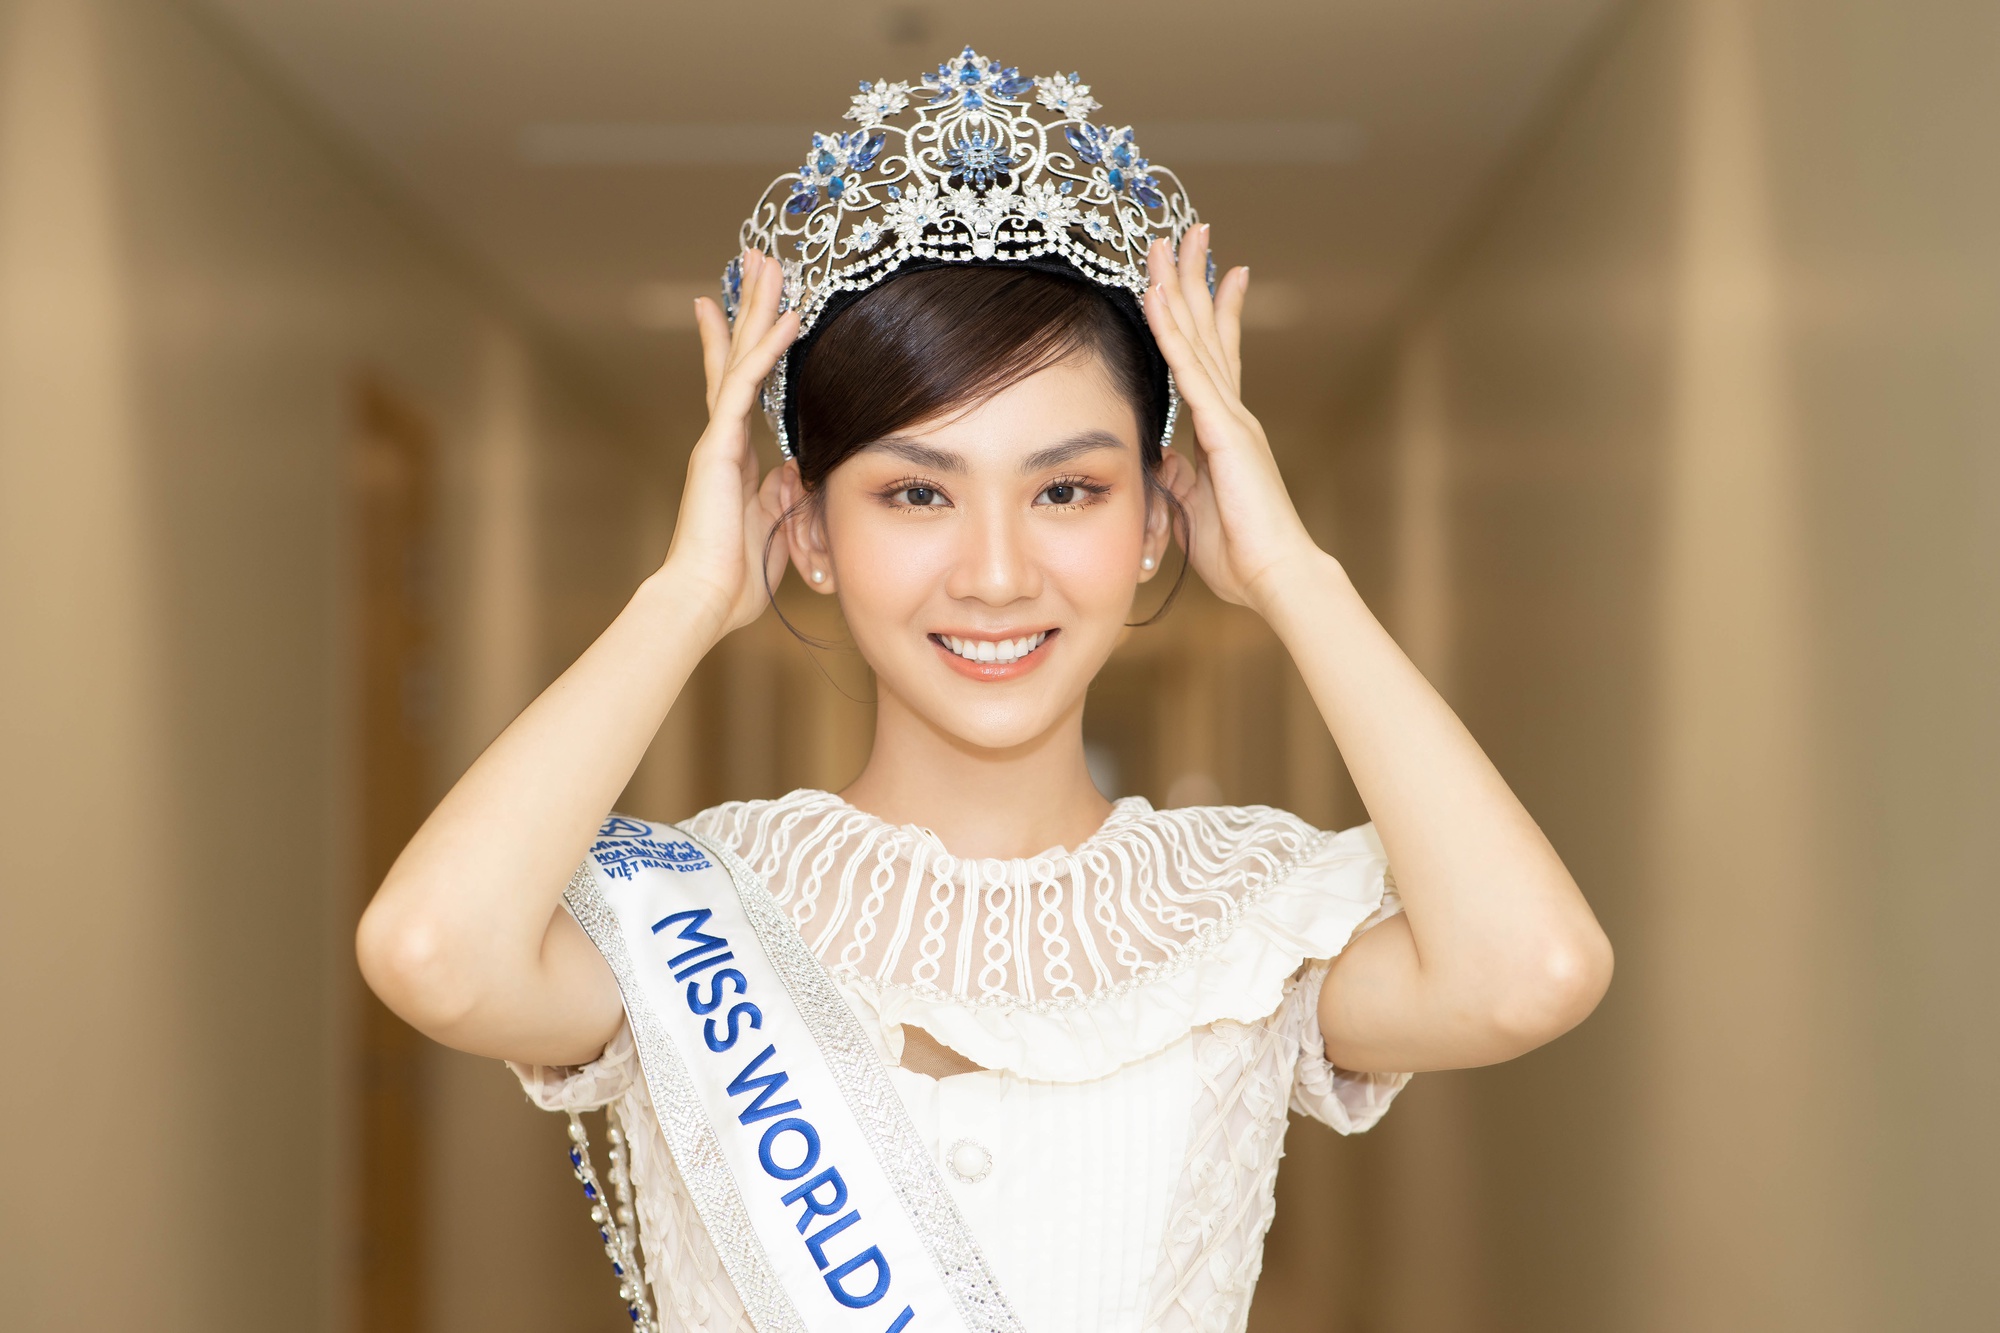 Hoa hậu Mai Phương phản hồi tin được dọn đường để đăng quang - Ảnh 2.